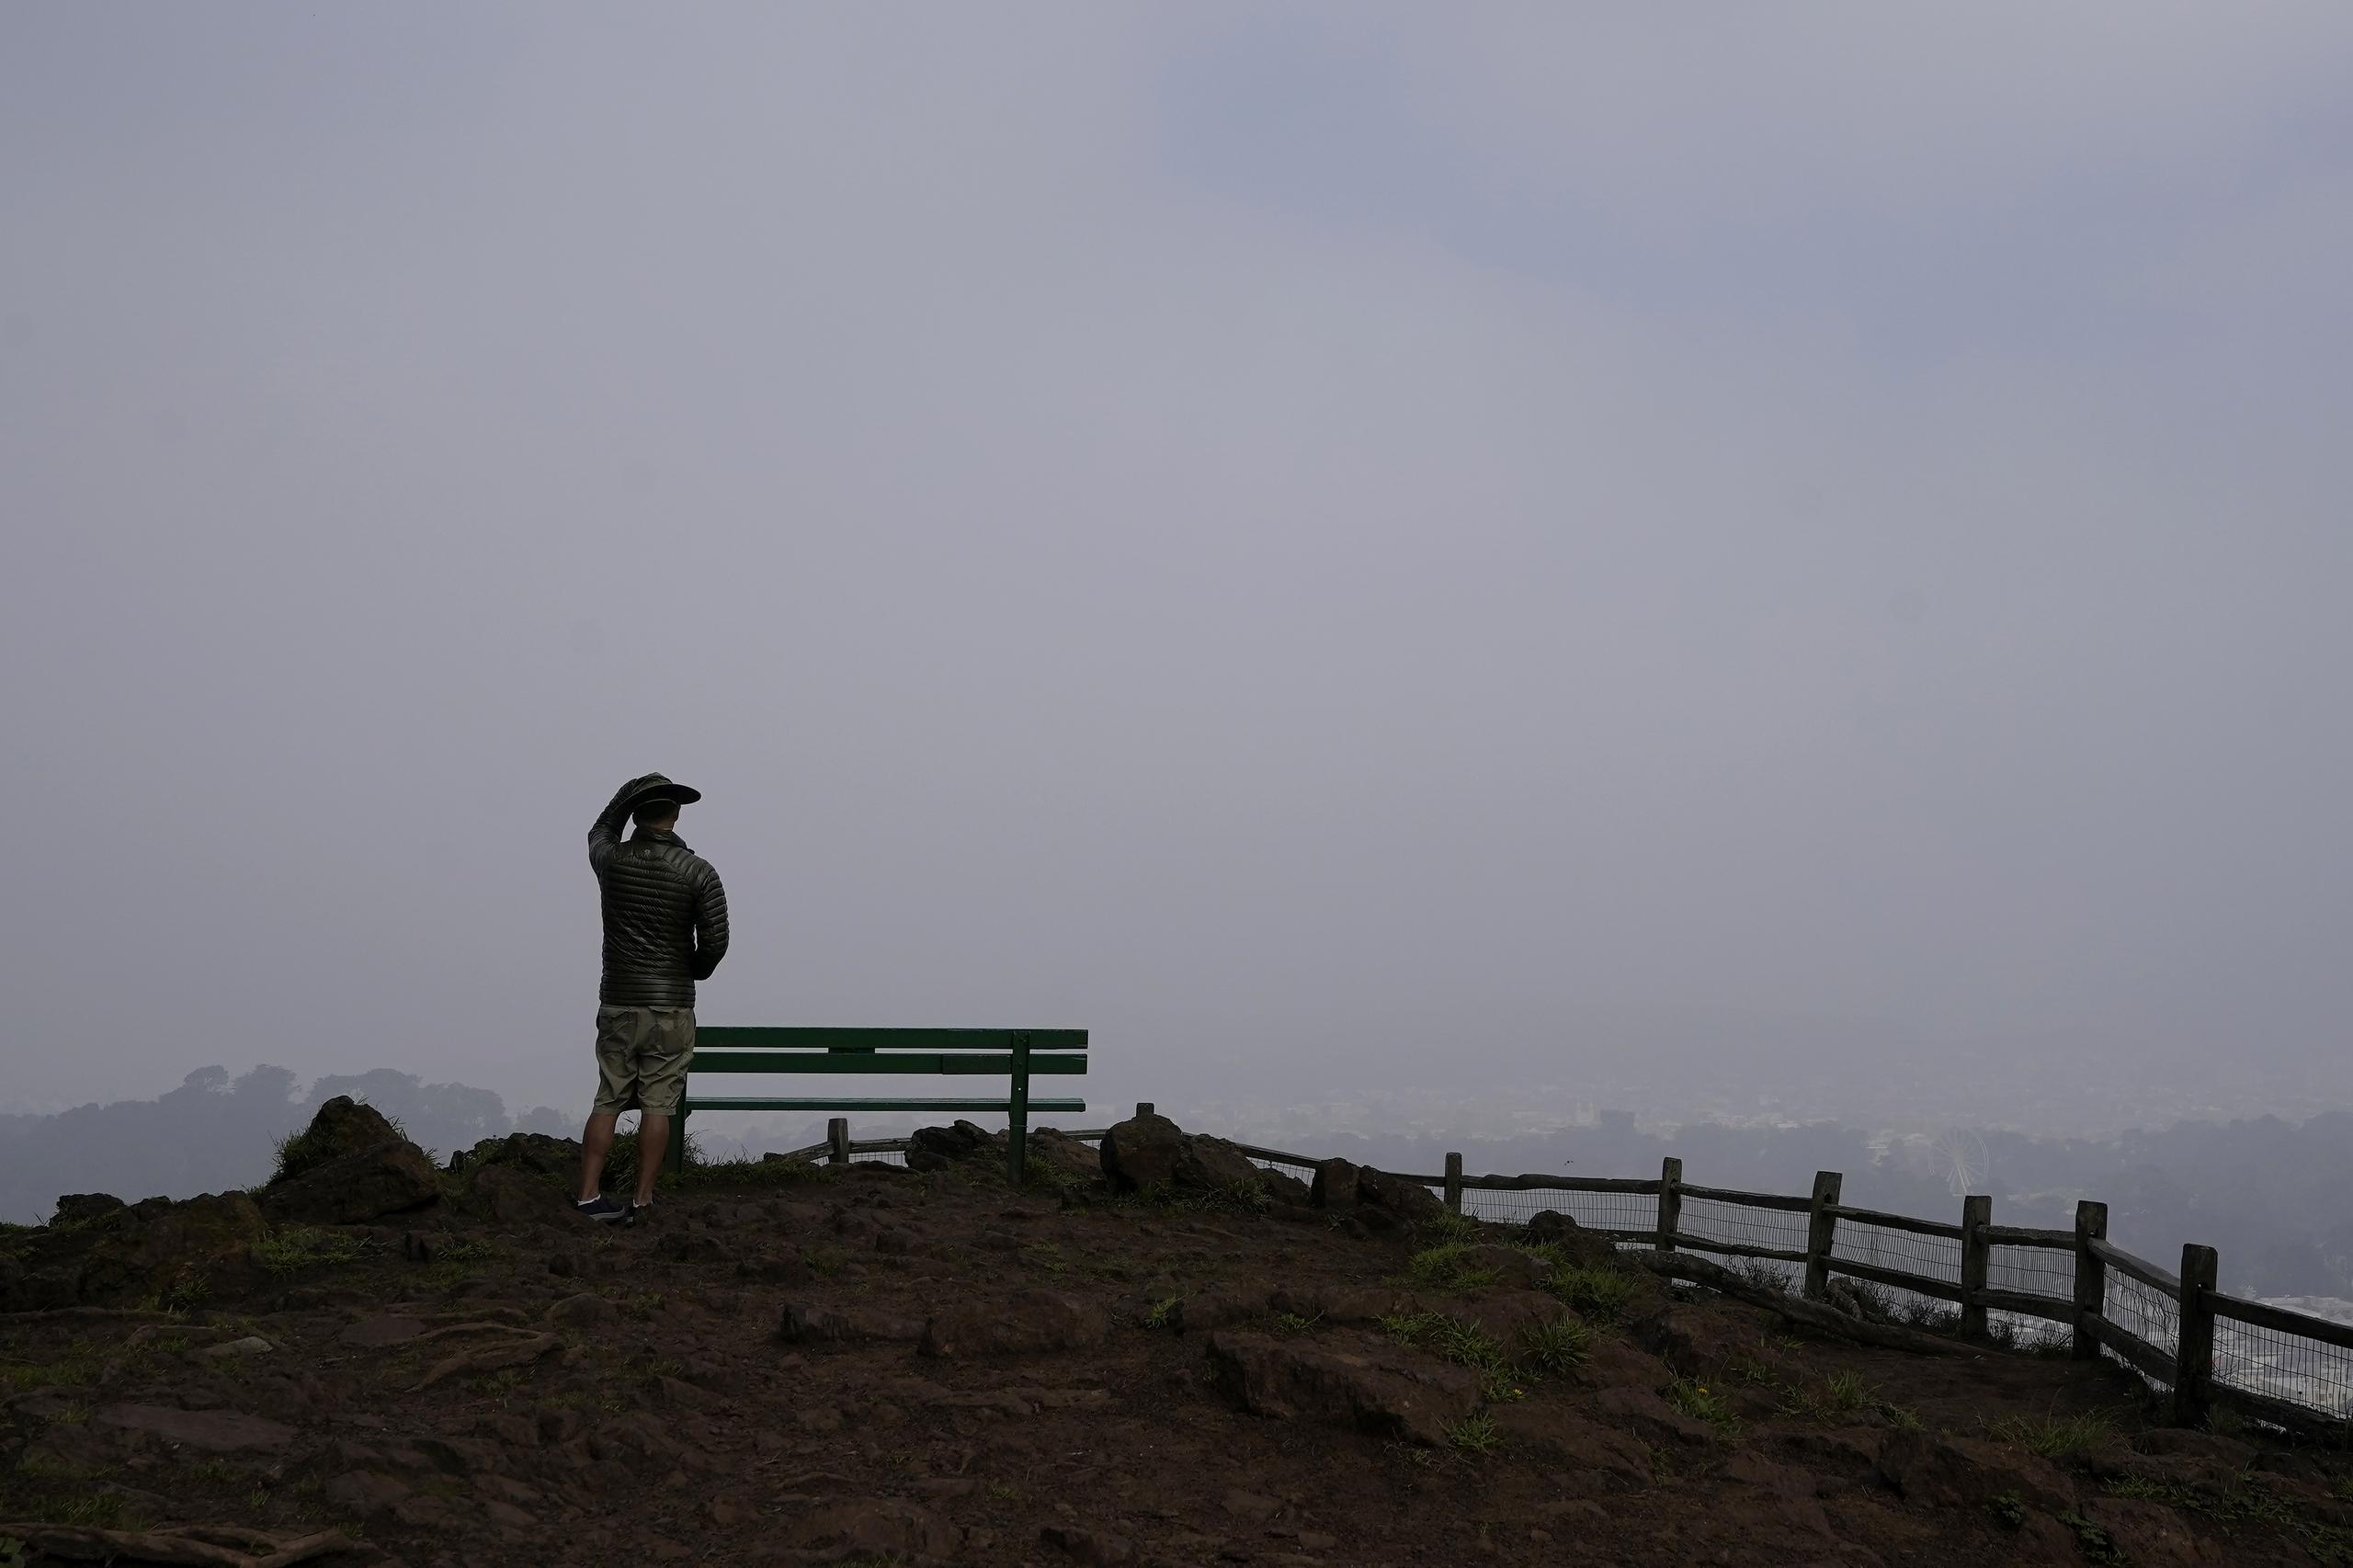 Un individuo observa desde un punto alto el Parque Grand View de San Francisco cubierto de smog por incendios forestales.